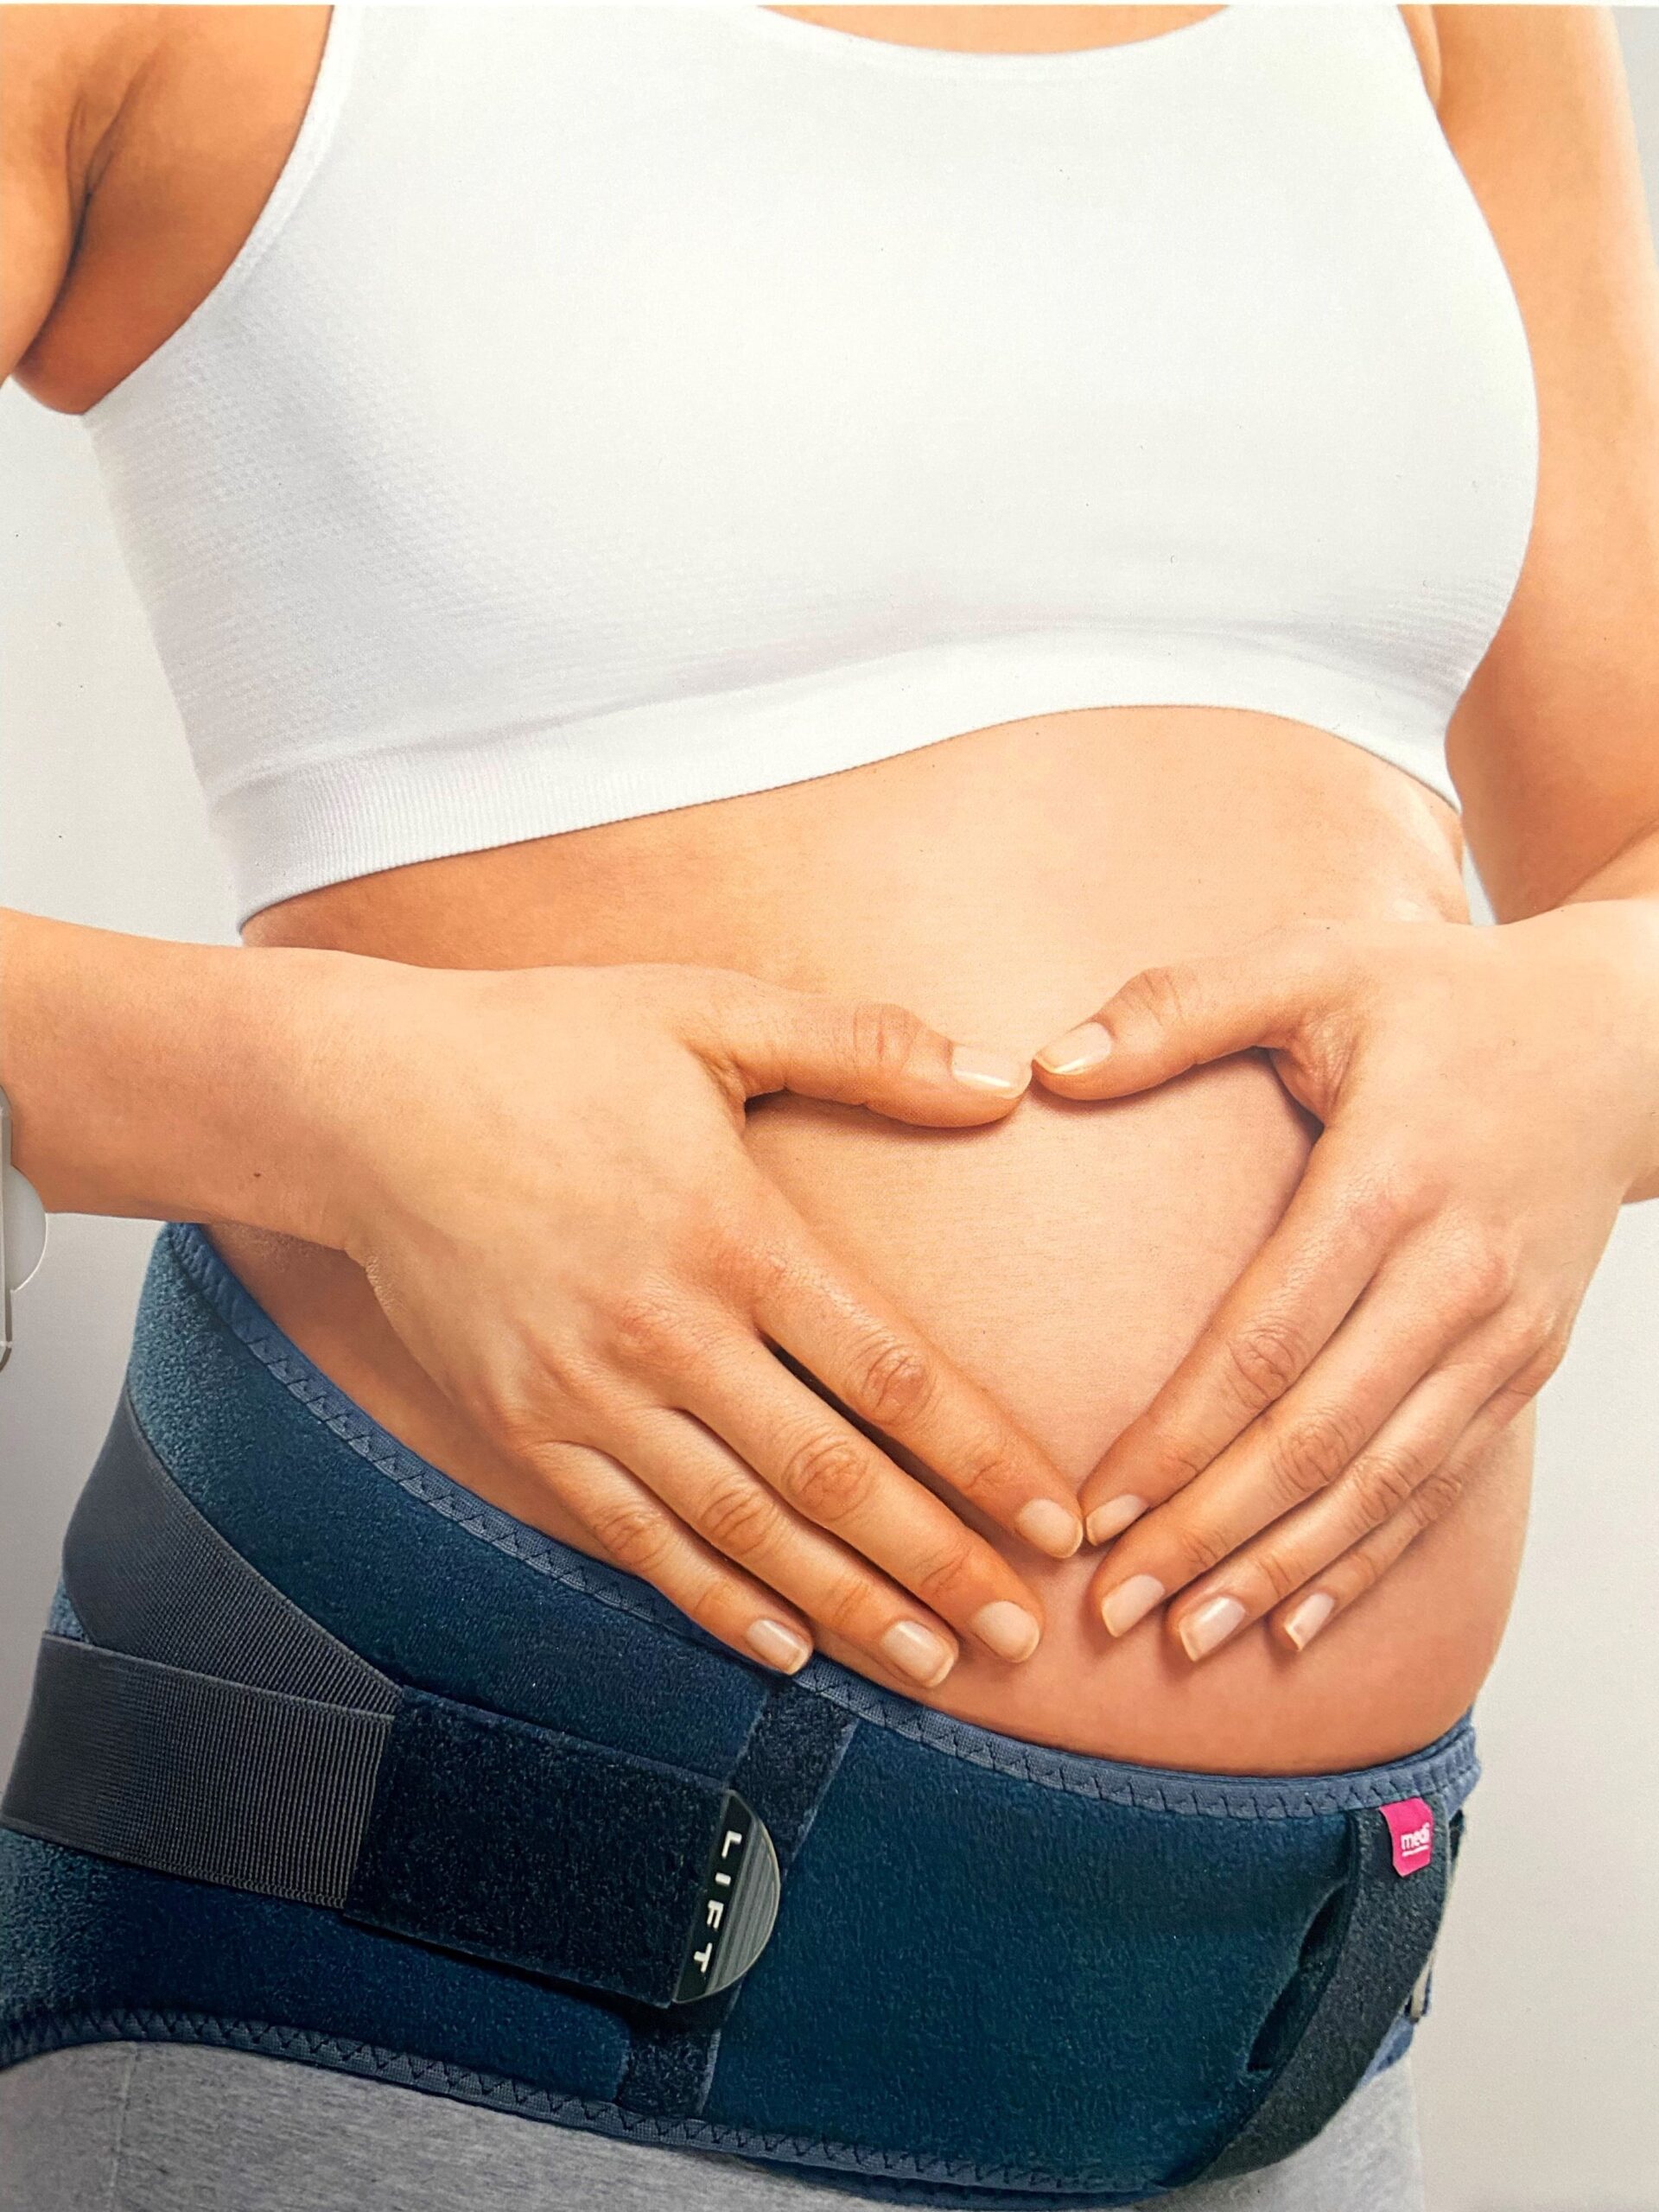 Lumbamed maternity ceinture de soulagement lombaire spéciale grossesse